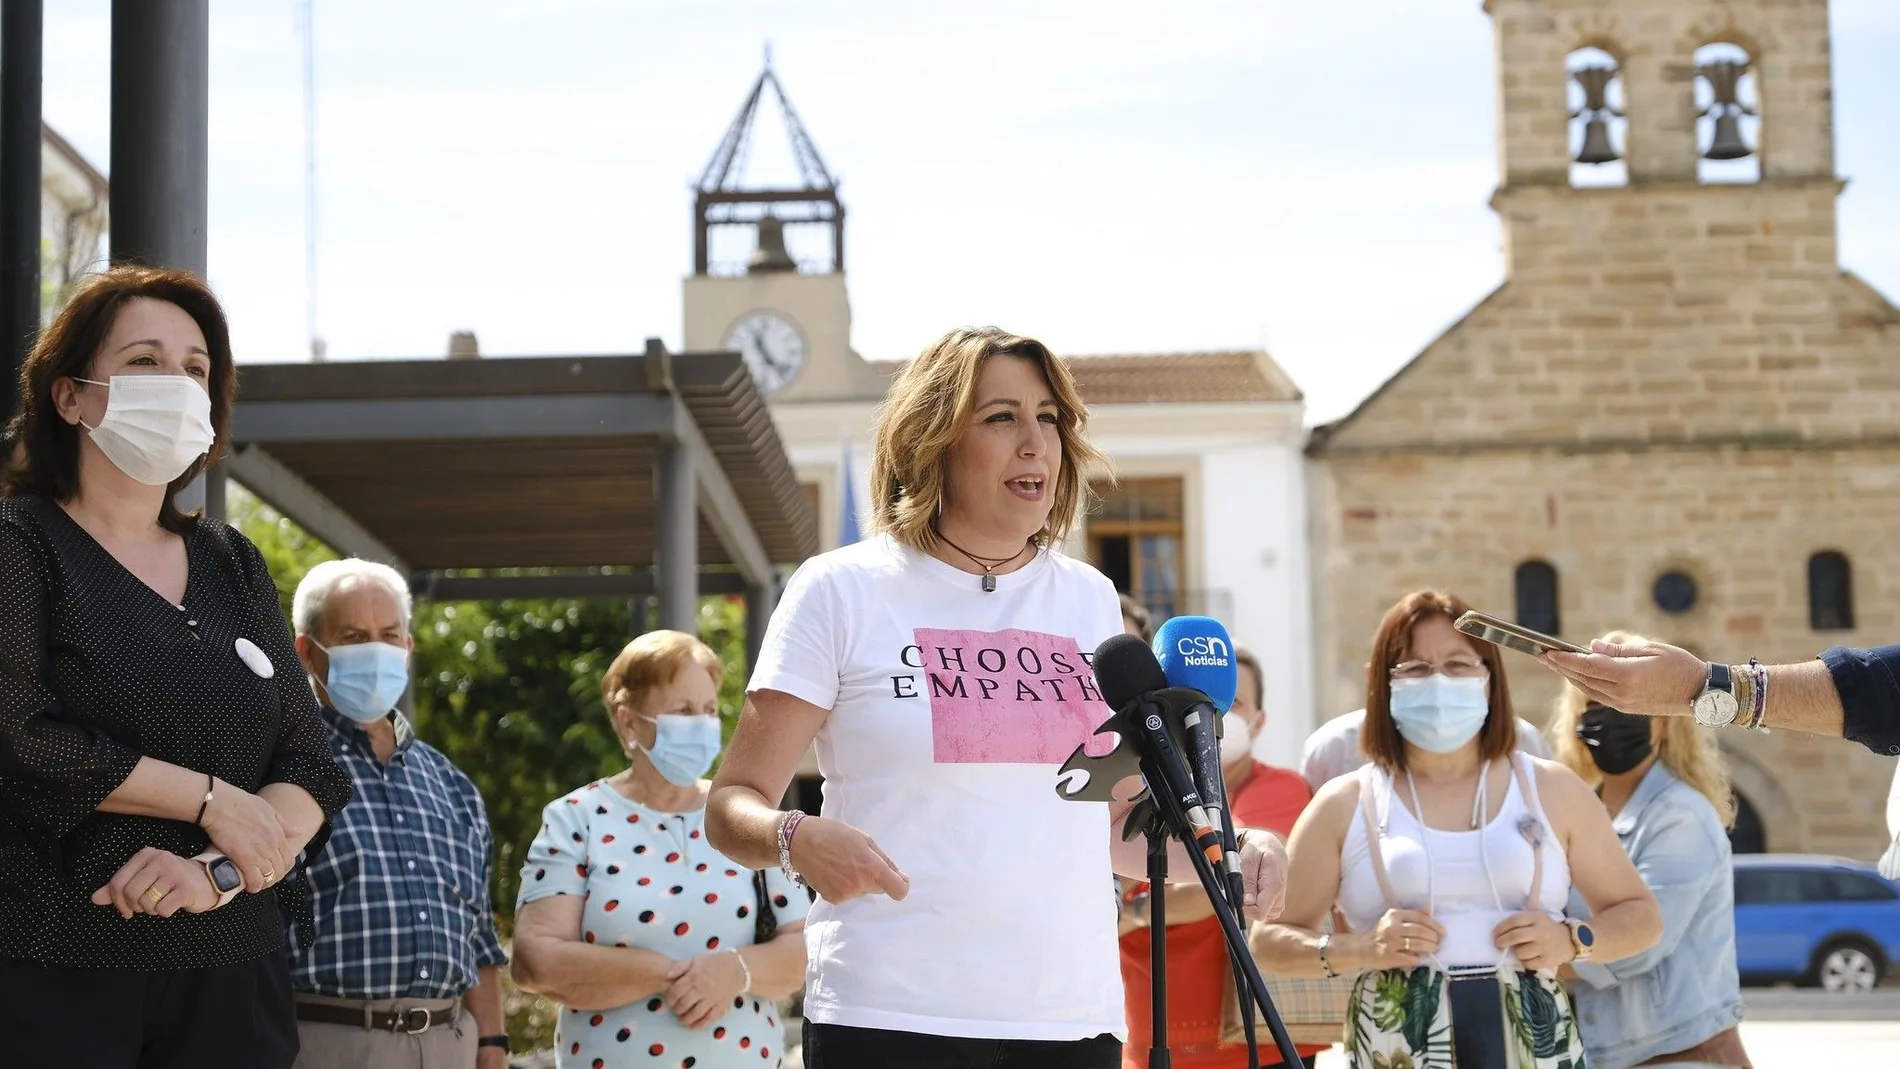 La socialista Susana Díaz luce en un acto de campaña una camiseta en la que se puede leer «Choose empathy» (Elige la empatía)